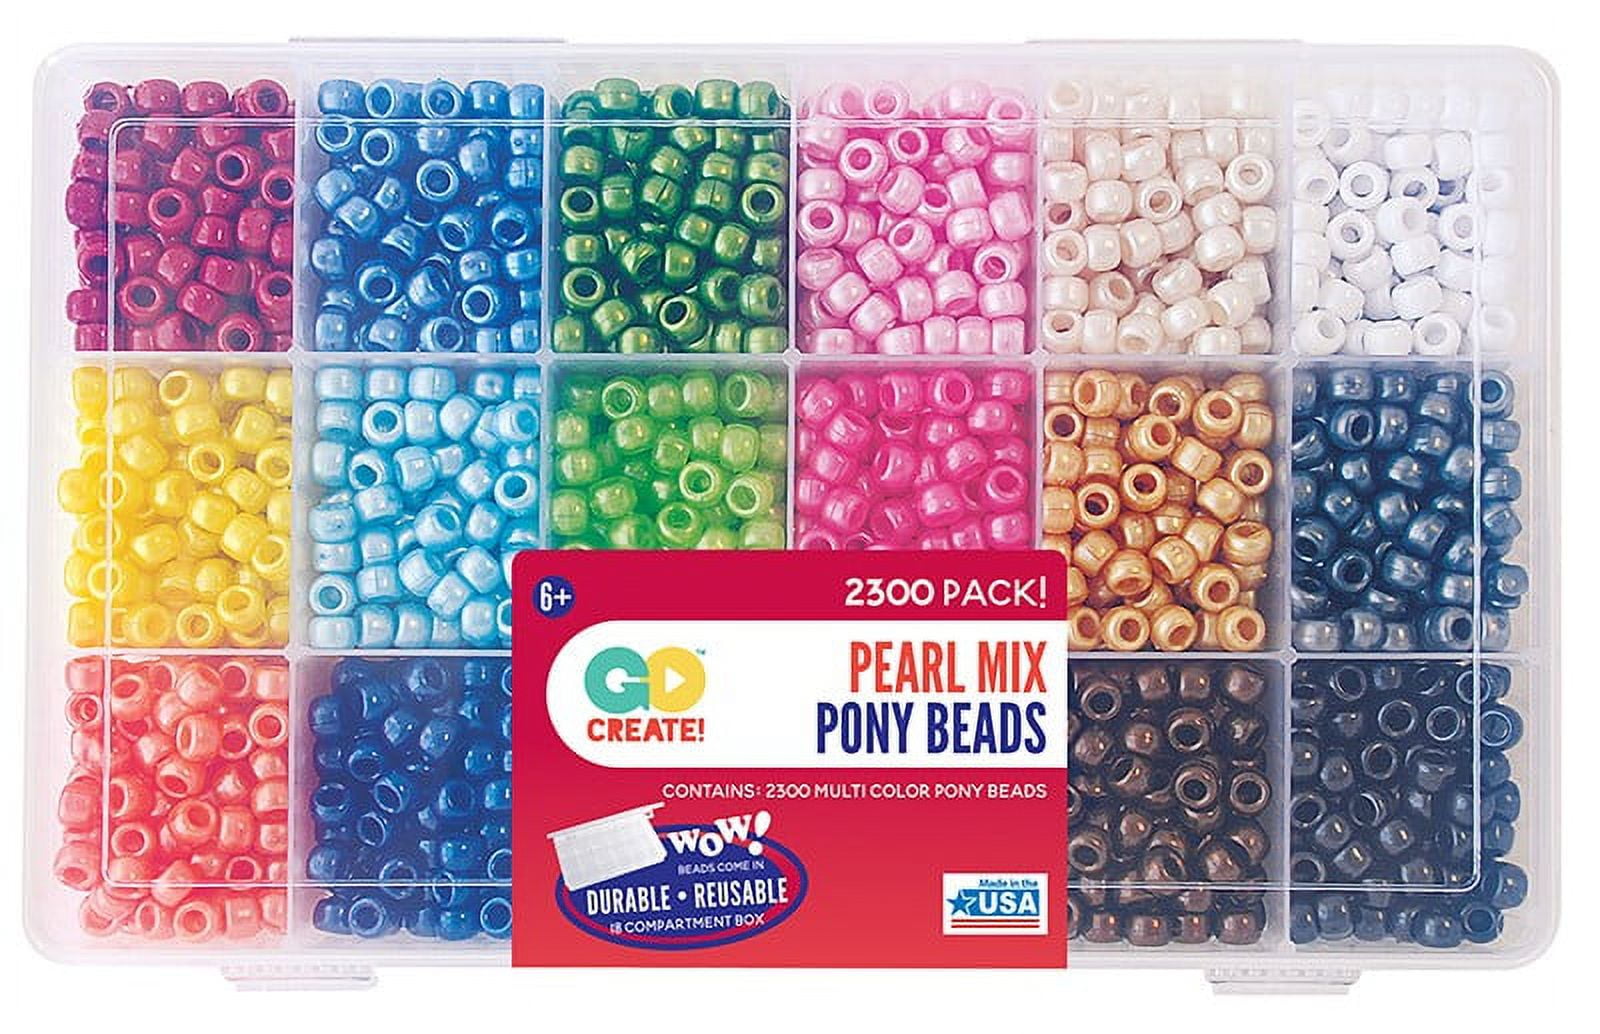 Bead Extravaganza Crayon Colors Bead Box